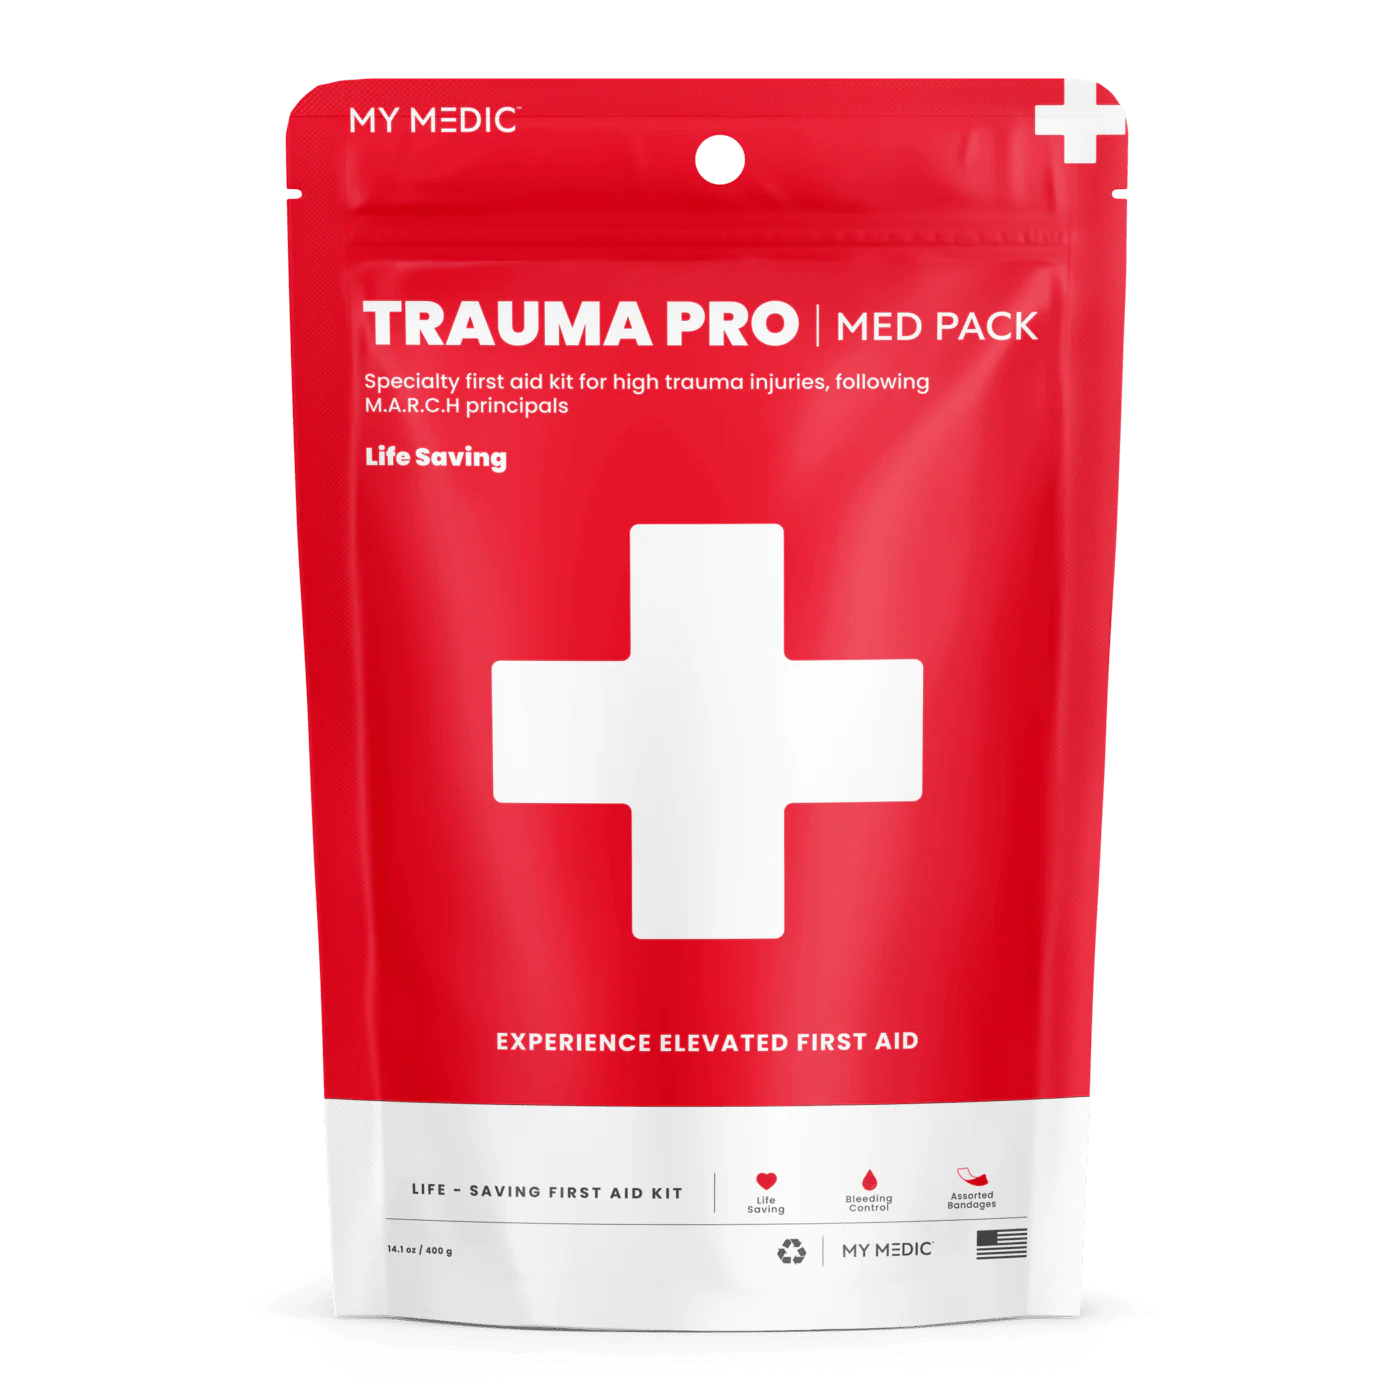 My Medic Trauma Pro Med Pack